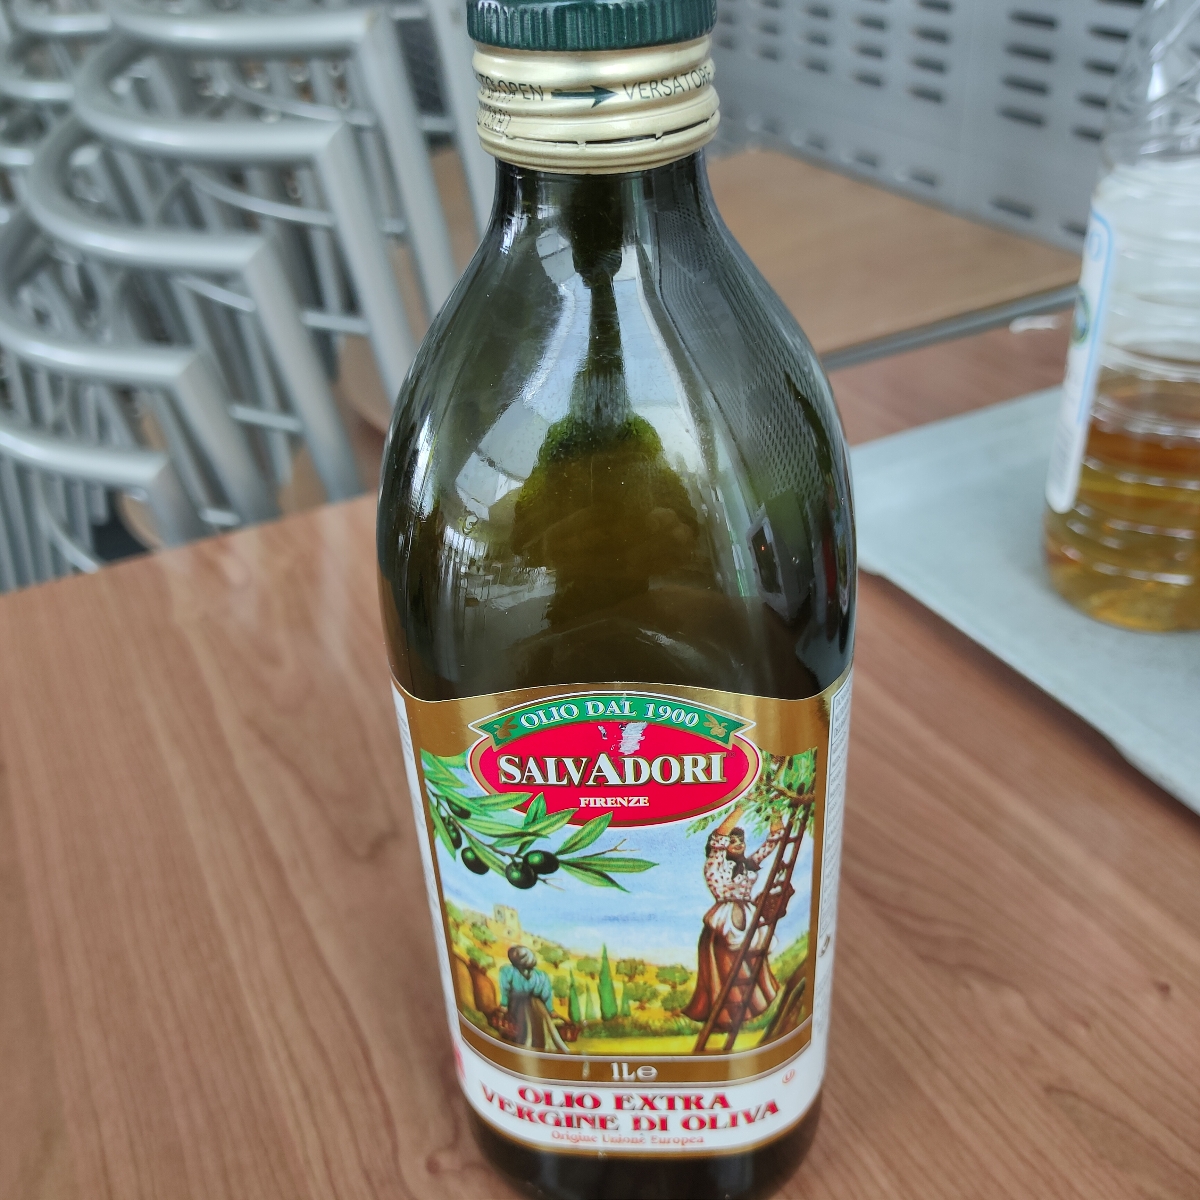 Salvadori Olio extra vergine di oliva Reviews | abillion